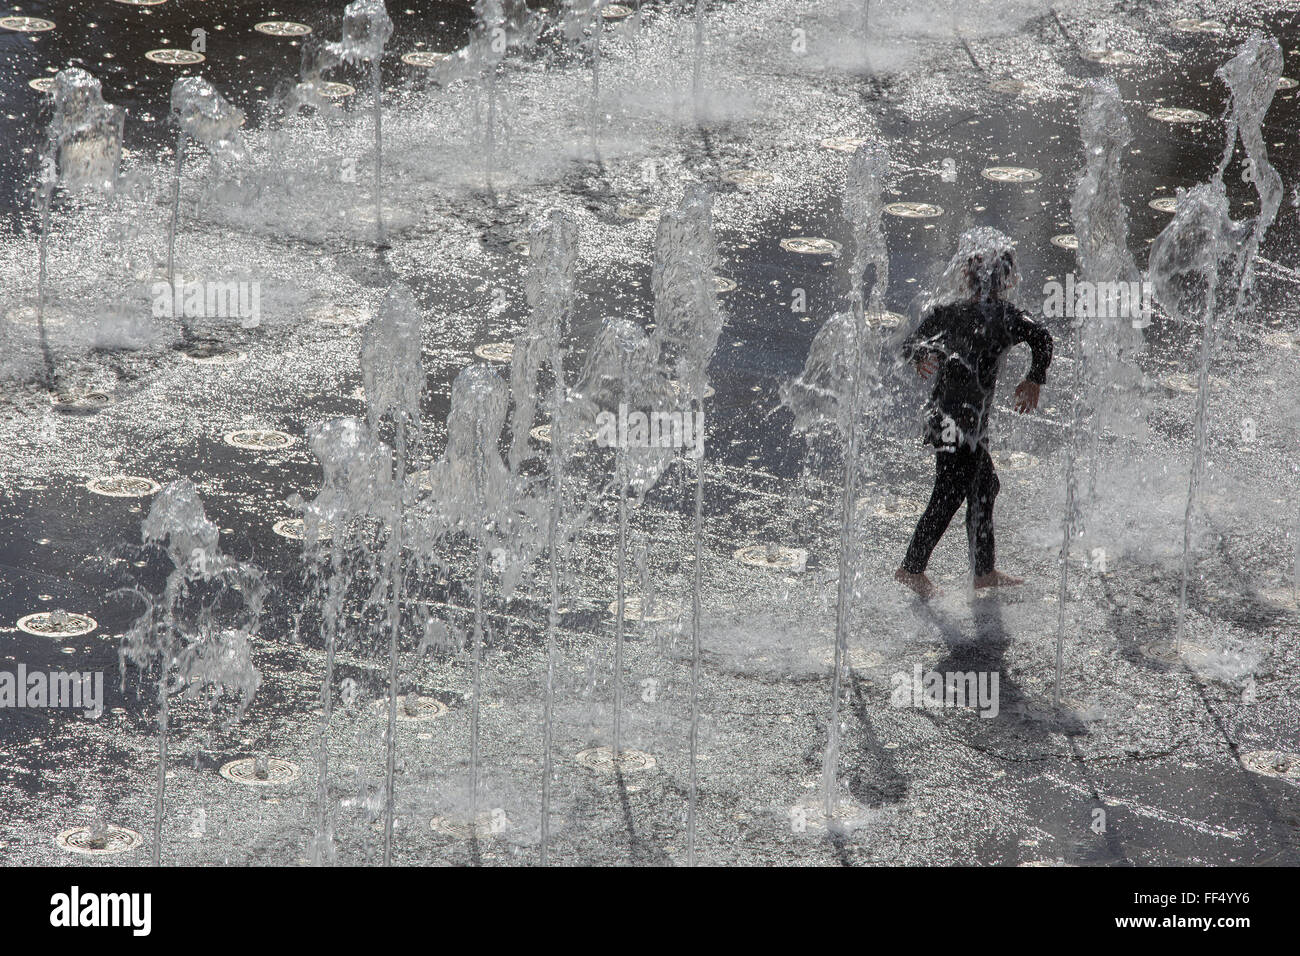 Jérusalem, Israël - mars 6 , 2015 : Le petit garçon jouant dans la fontaine de Teddy Park. Banque D'Images